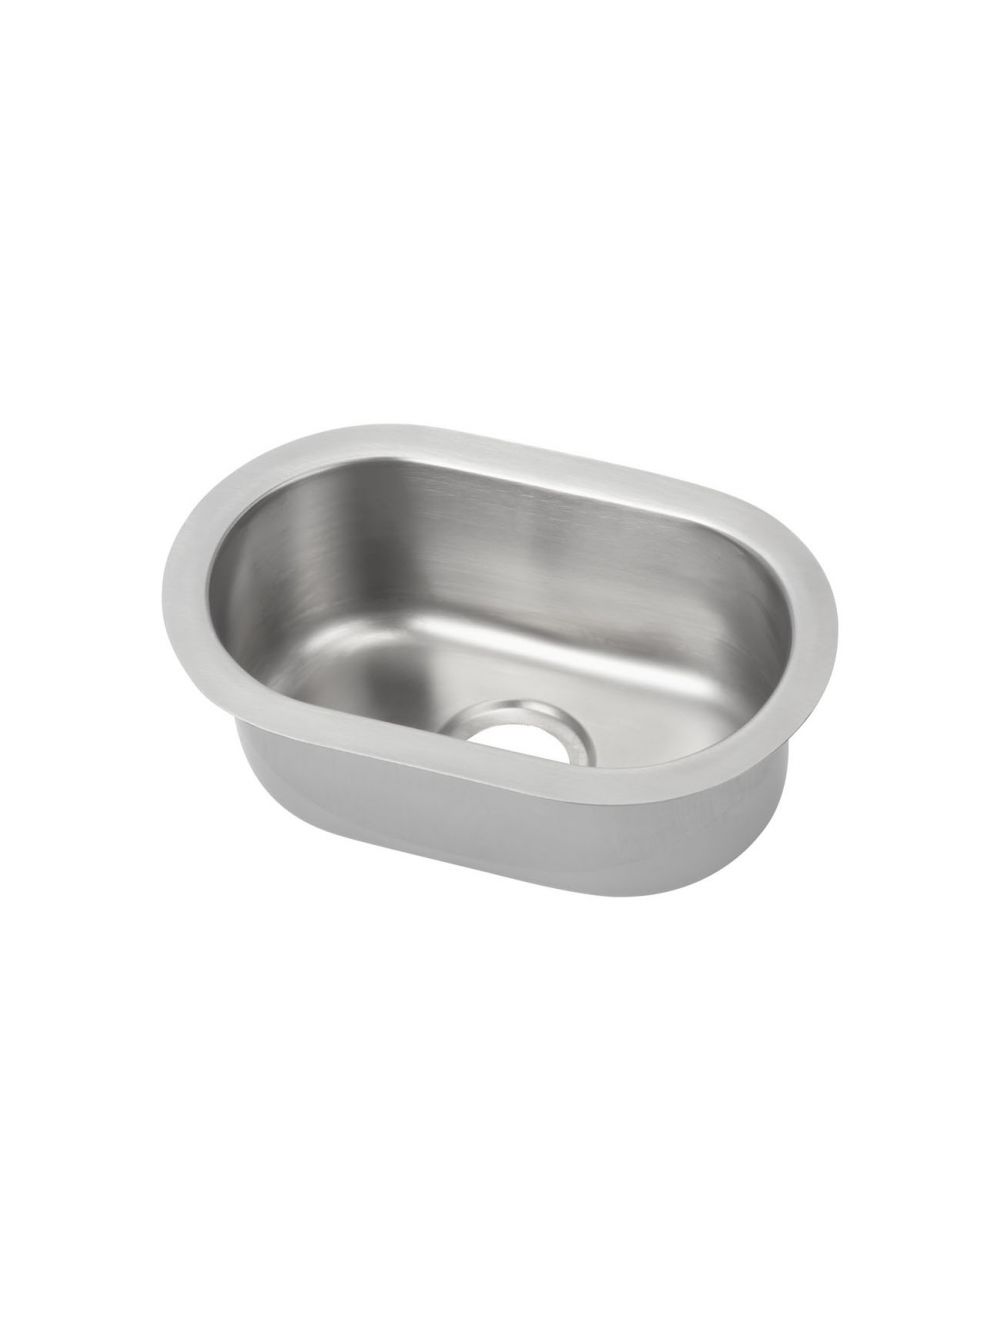 Pressed Sink Bowl (140W x 245D x 100H)